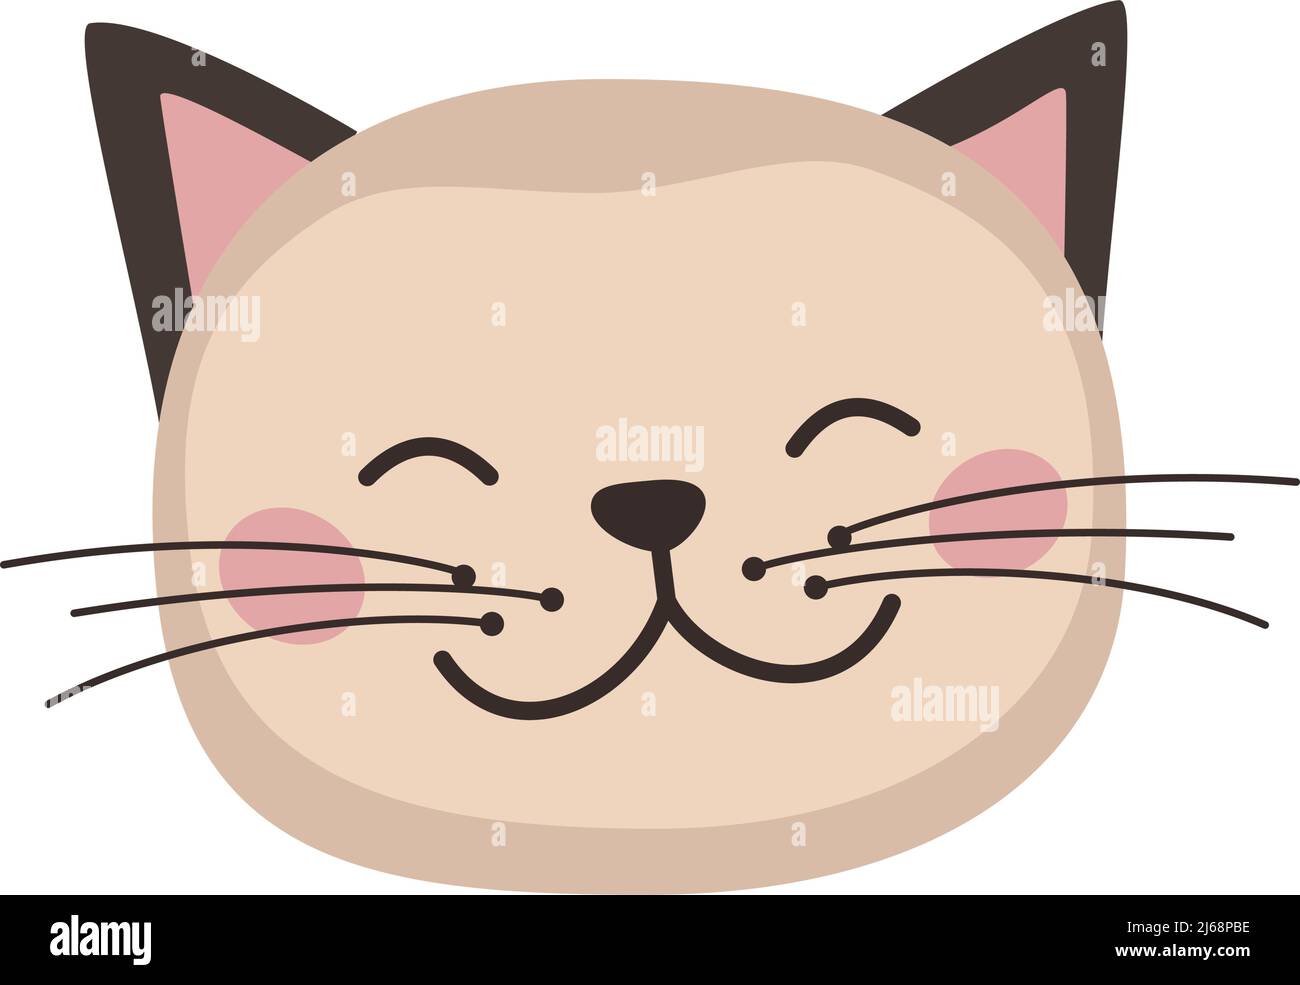 Kopf der niedlichen Katze in kindlichem Stil mit lächelnd Schnauze und Augen. Lustiges Haustier mit glücklichen Gesicht. Vektorgrafik flache Illustration für Feiertage Stock Vektor